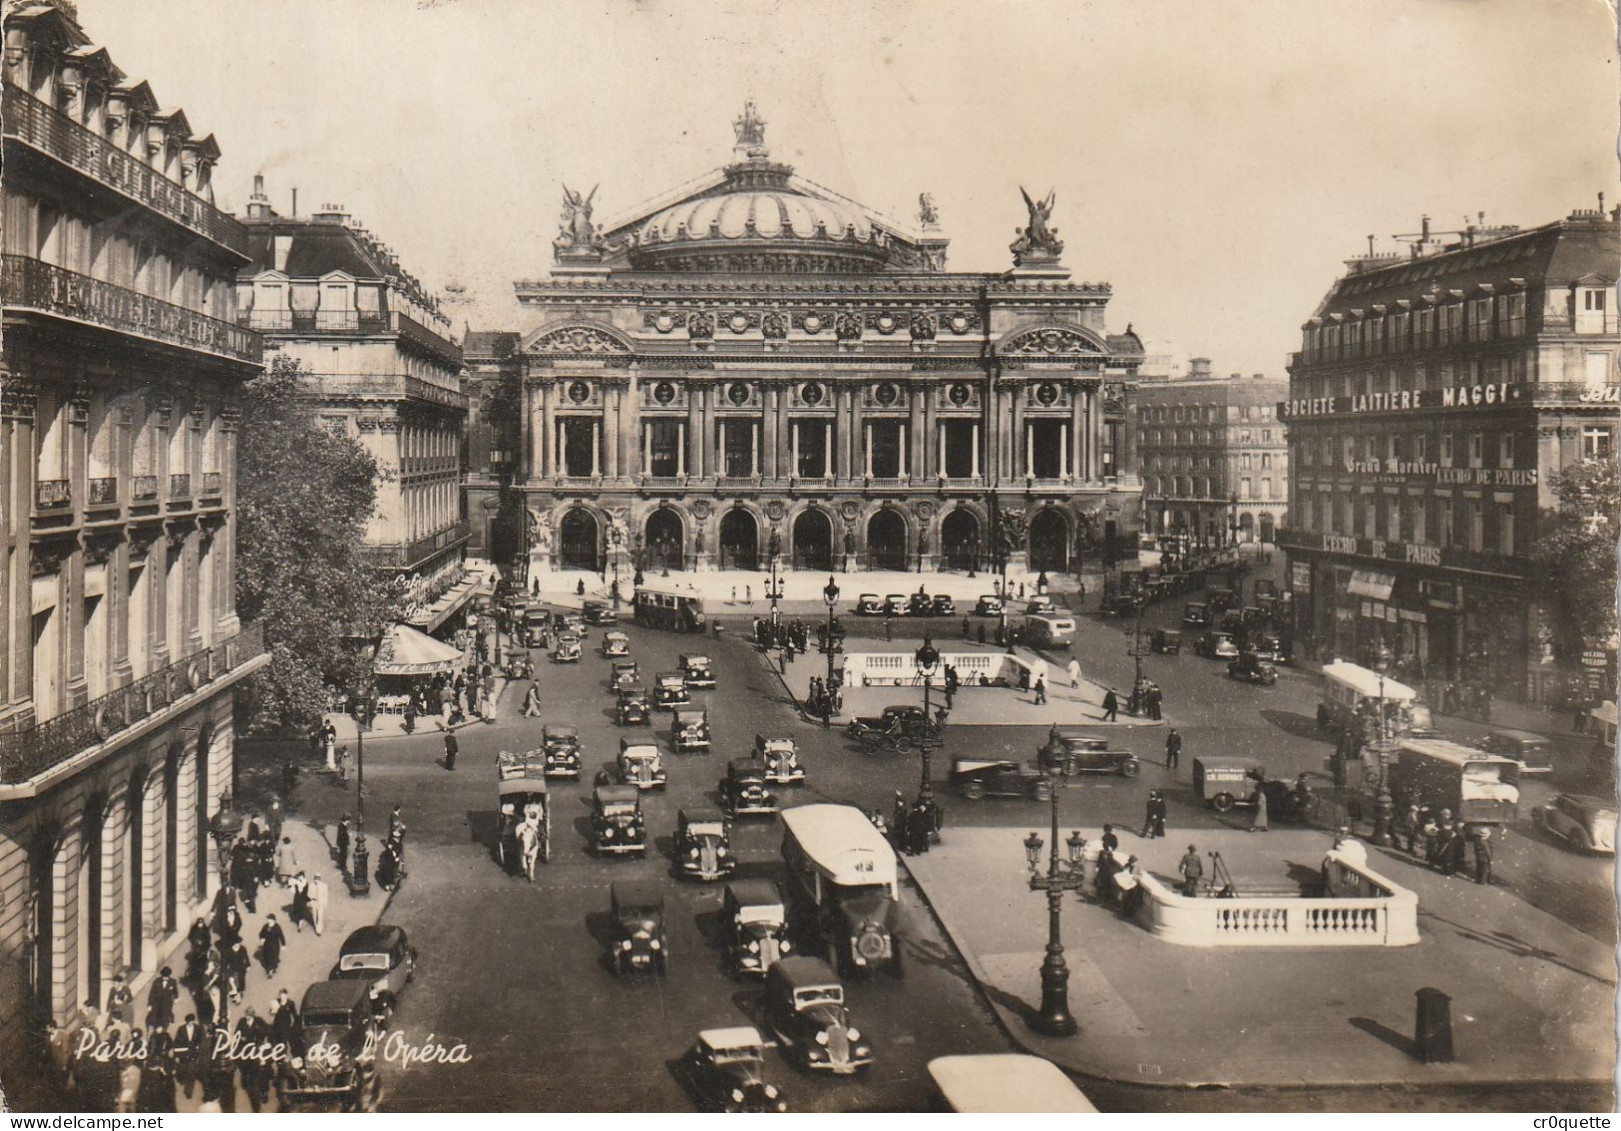 # 75000 PARIS / OPERA GARNIER de 1910 à 1950 en 12 CARTES POSTALES